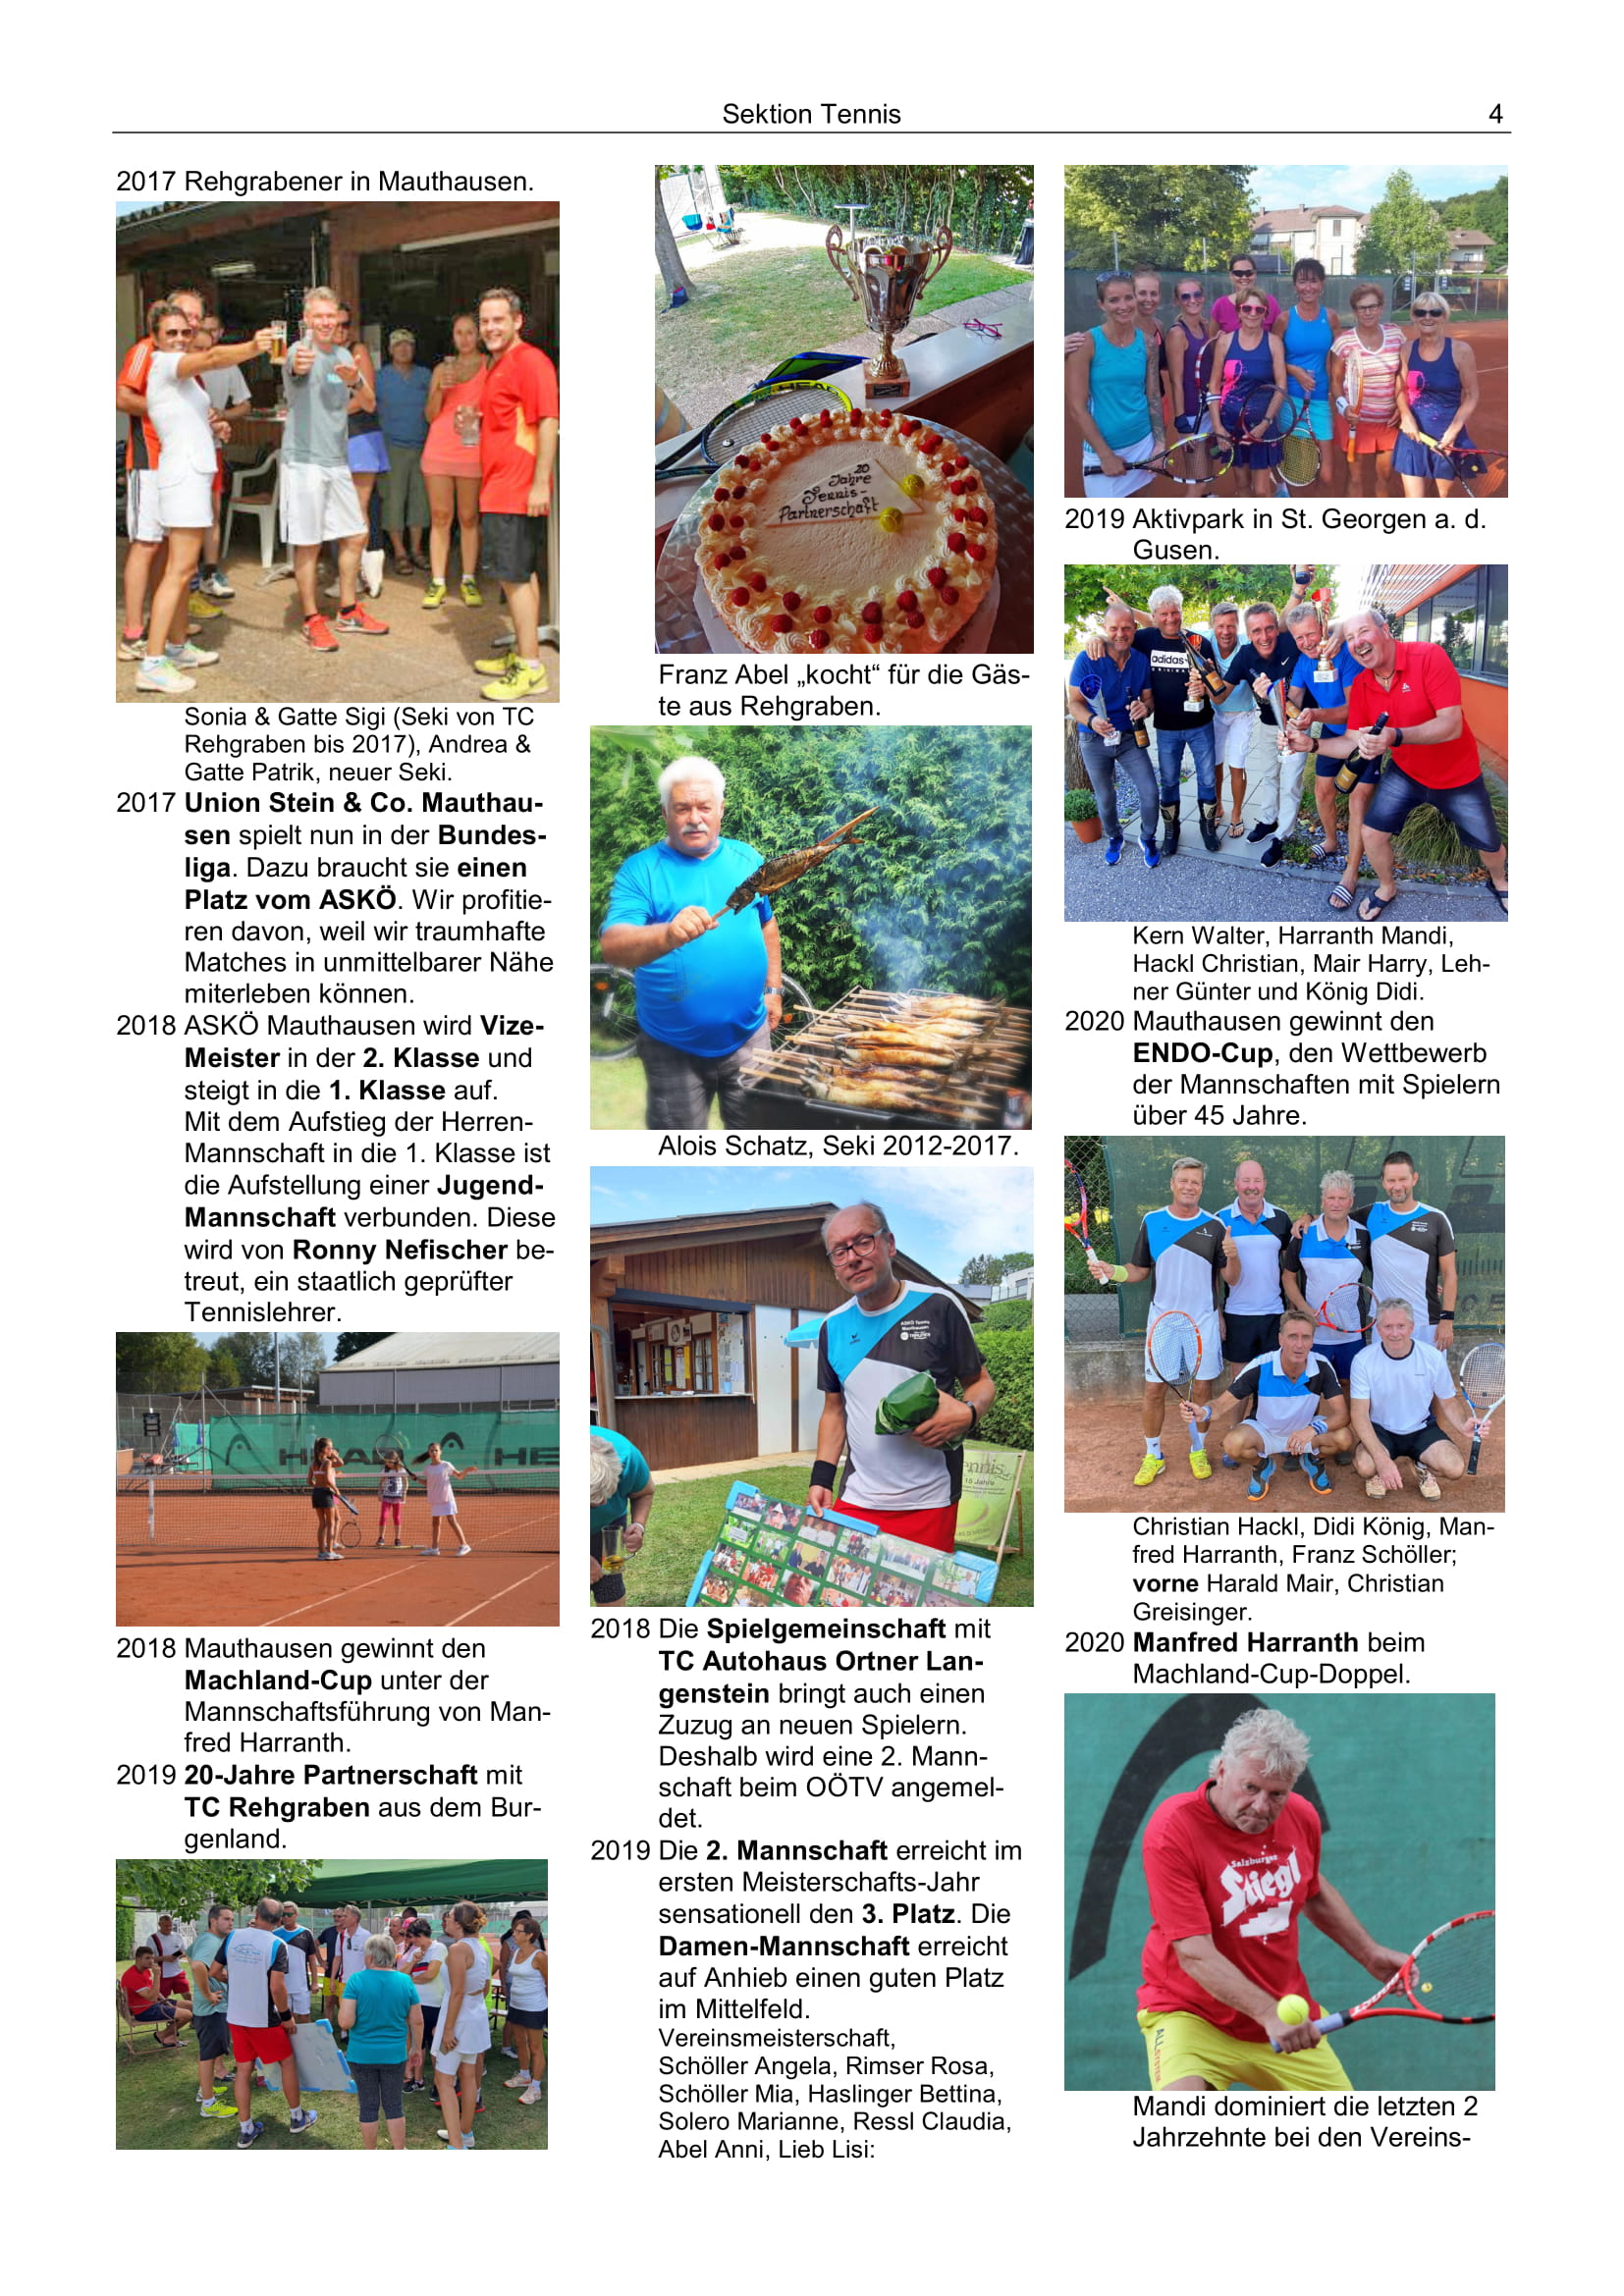 100 Jahre ASKÖ Sektion Tennis gegründet 1981 4